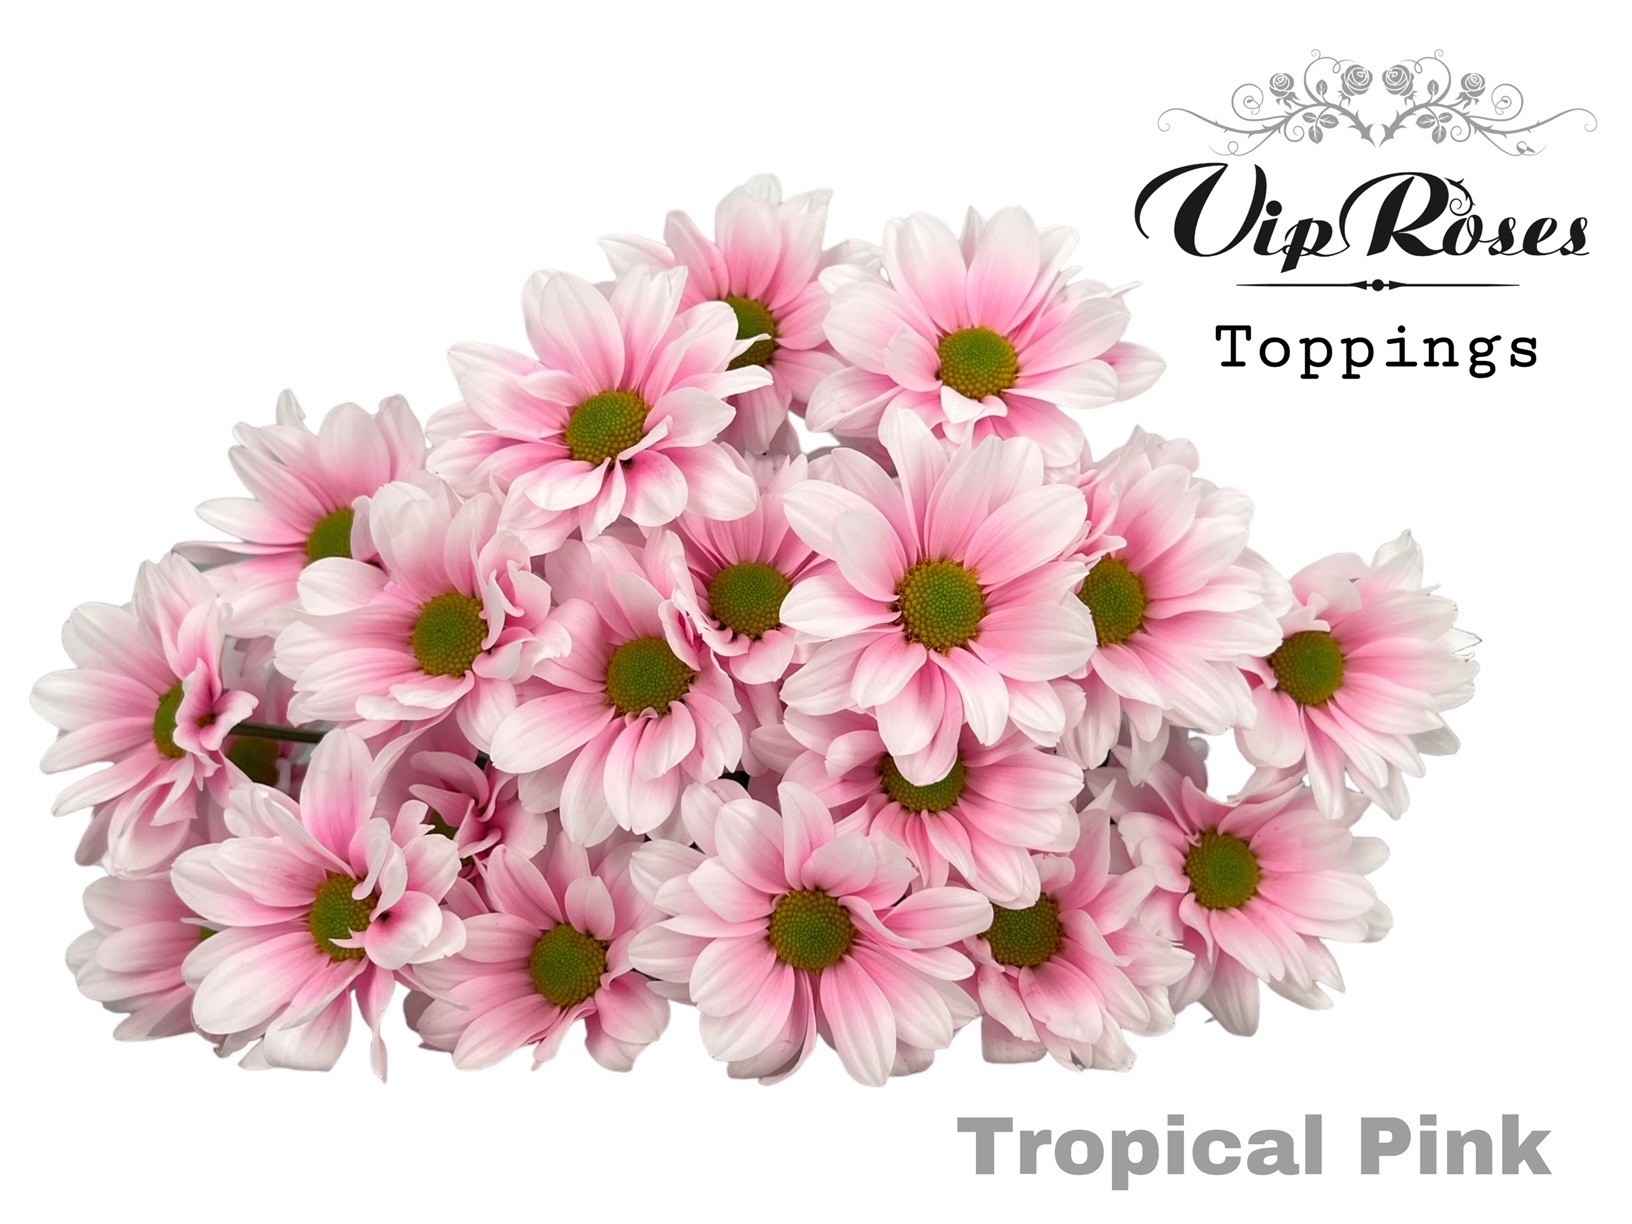 Срезанные цветы оптом Chrys sp paint tropical pink от 20шт из Голландии с доставкой по России